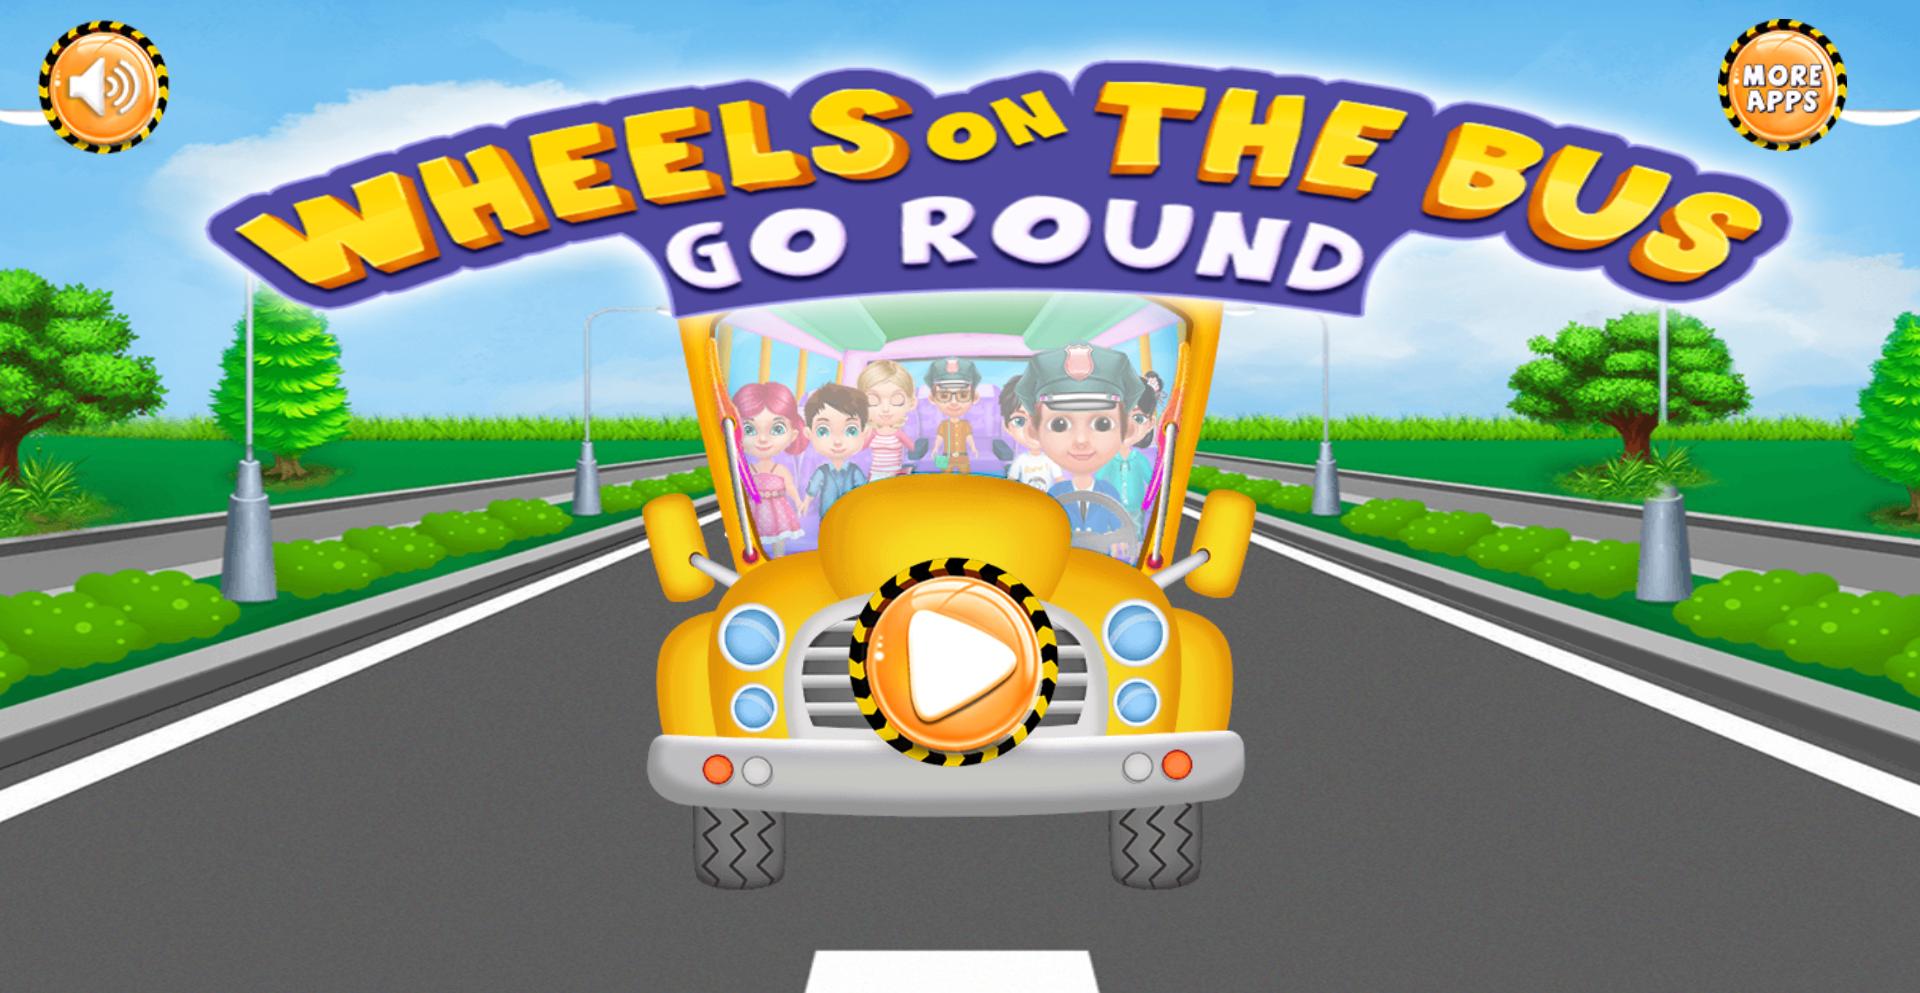 School Bus игры. Игра автобус для детей. Игра детская для детей школьный автобус игра. Музыкальная игра автобус